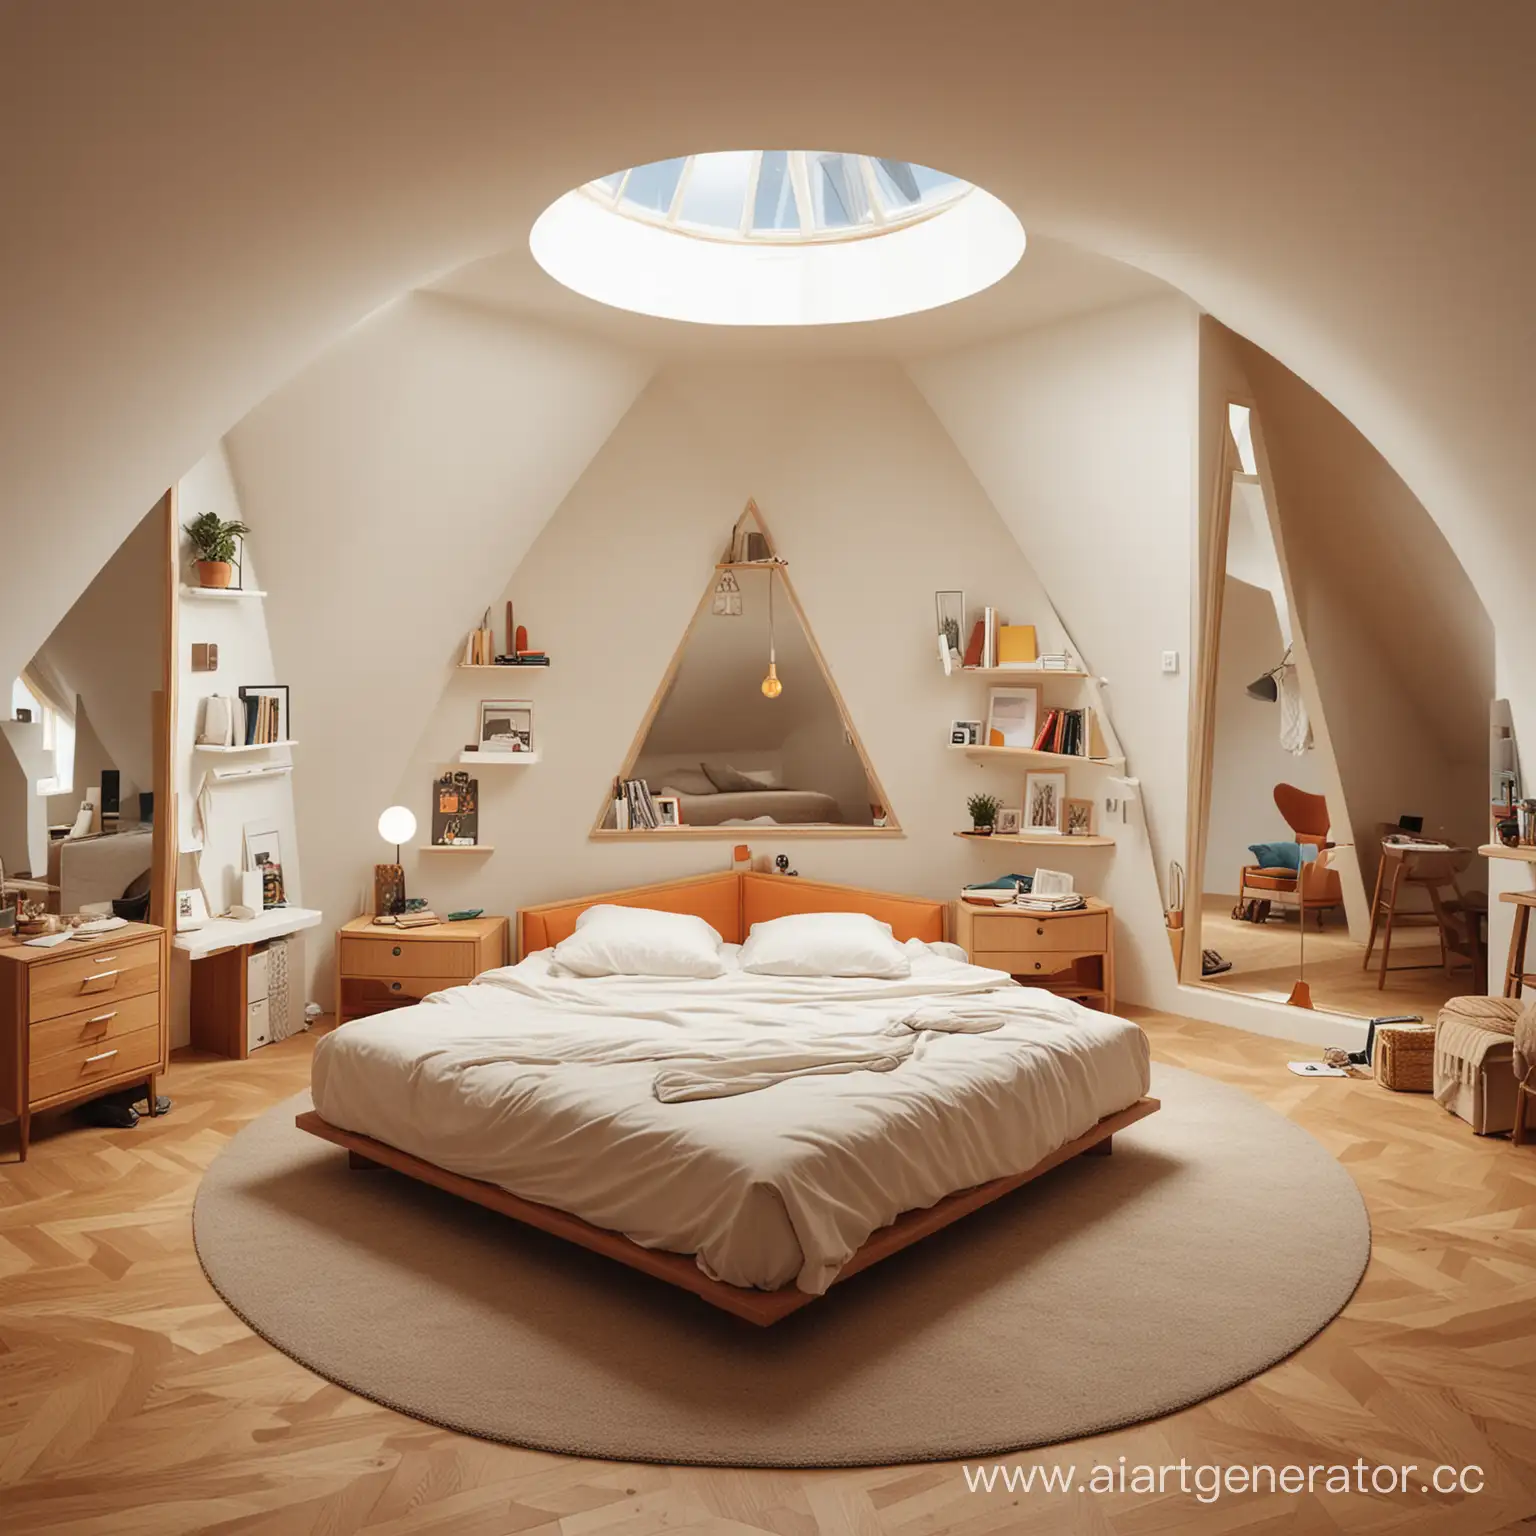 Hidden-Geometric-Shapes-in-Bedroom-Interior